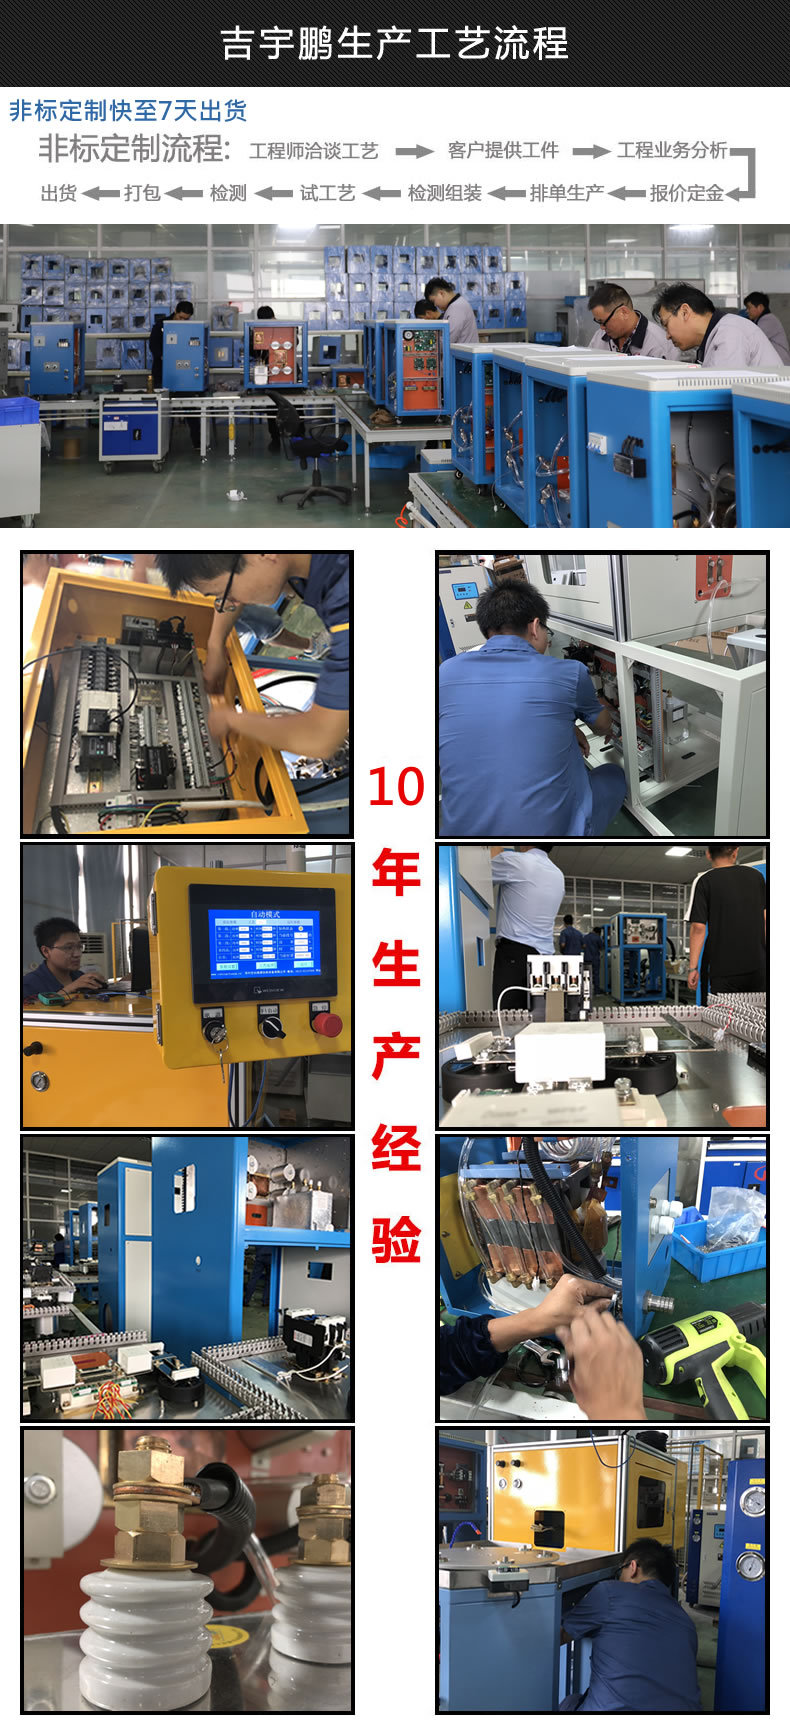 苏州吉宇鹏电源科技有限公司生产工艺流程